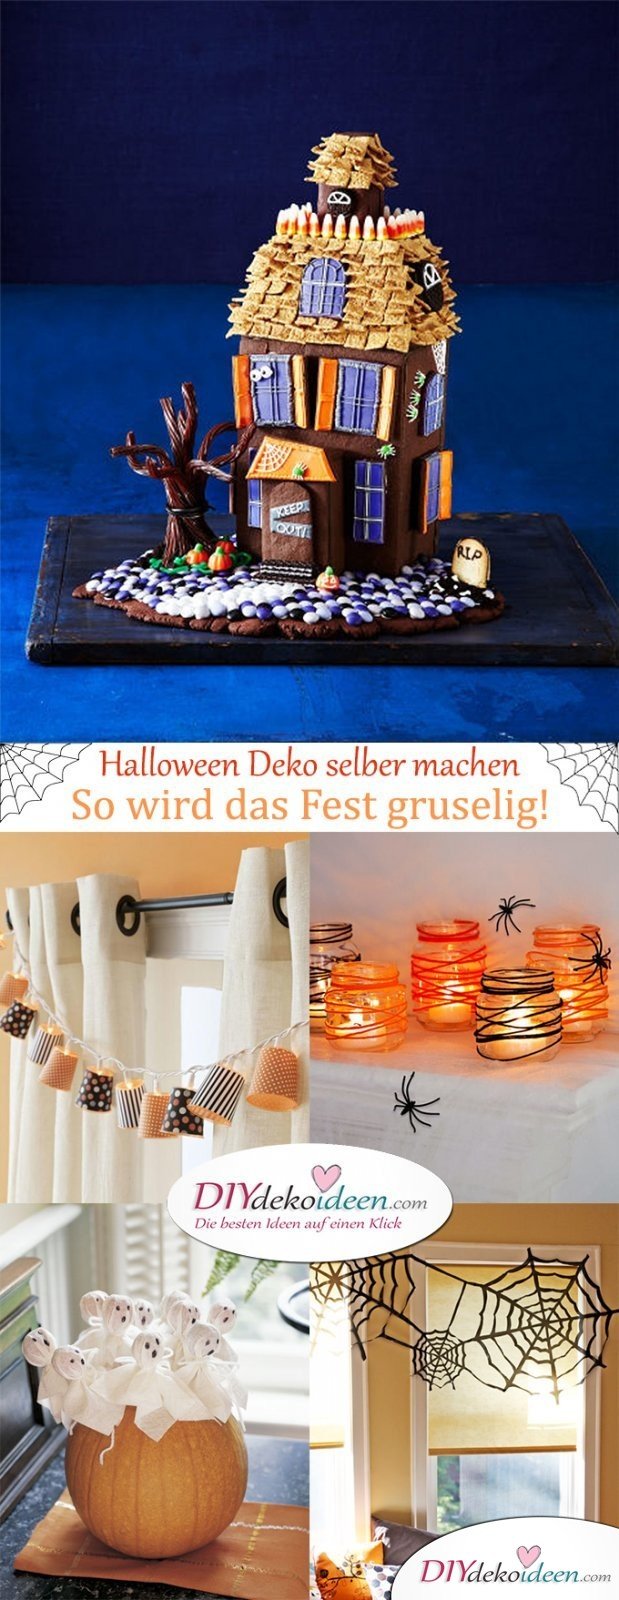   Halloween Deko selber machen - So it is going to be horrible! 